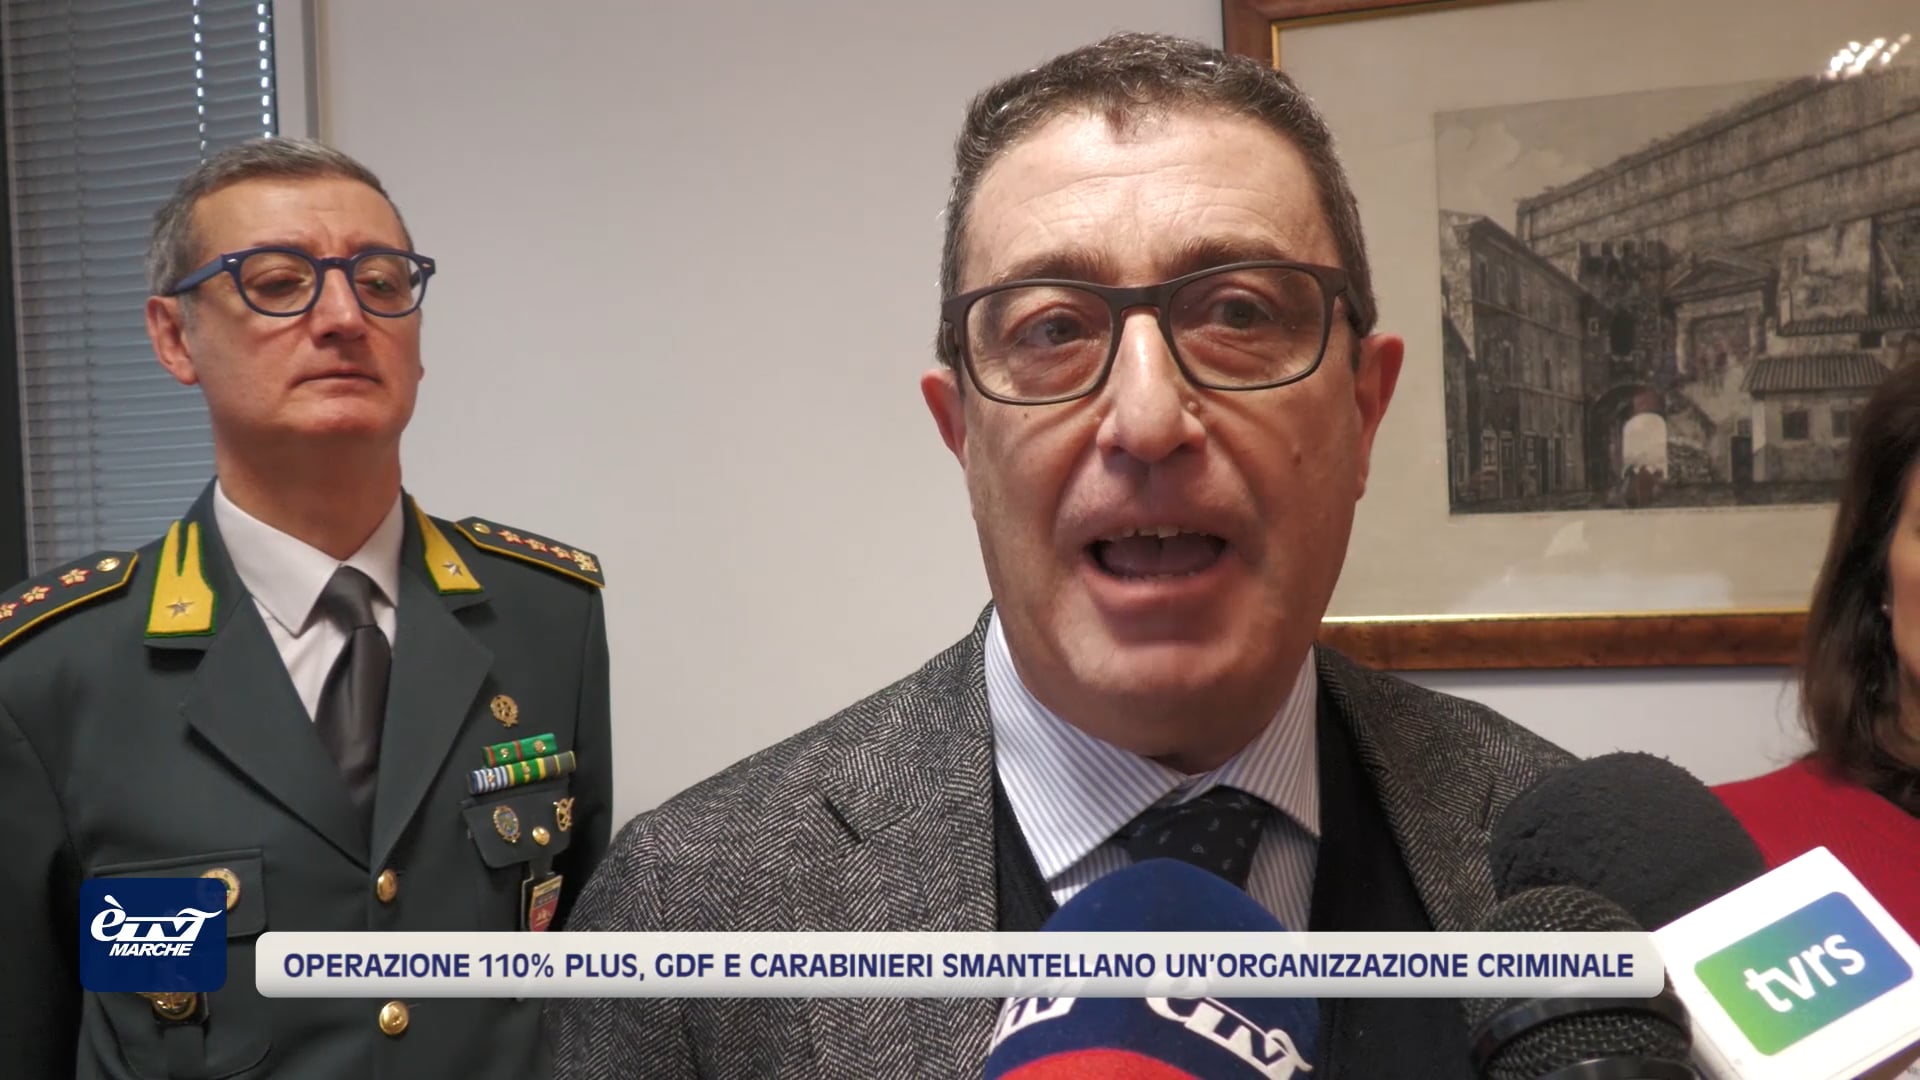 Operazione 110% Plus, GdF e Carabinieri smantellano un’organizzazione criminale - VIDEO